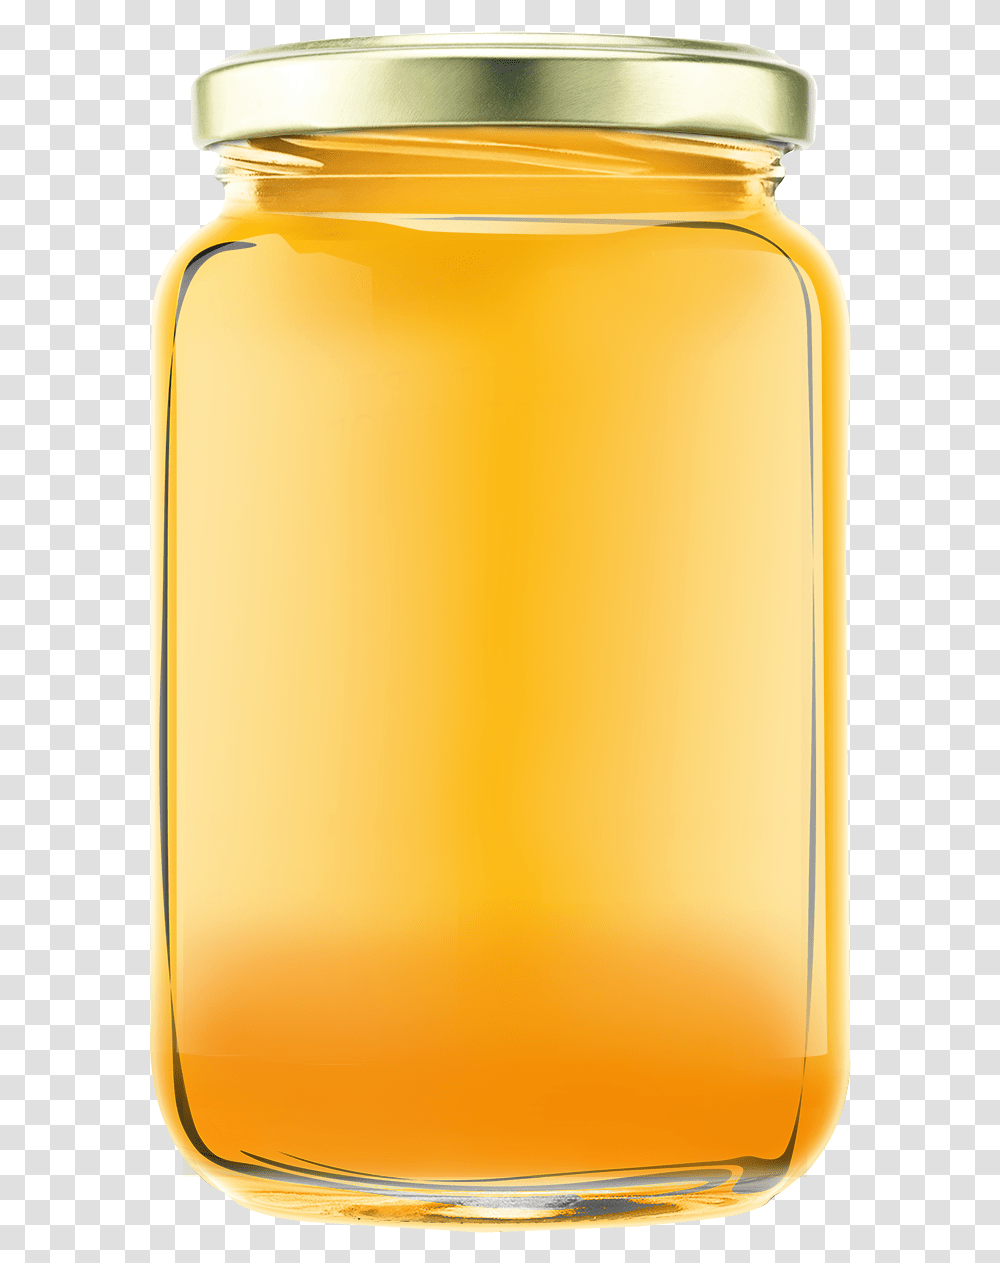 Honey Jar Image Honey Jar, Juice, Beverage, Orange Juice, Bottle Transparent Png